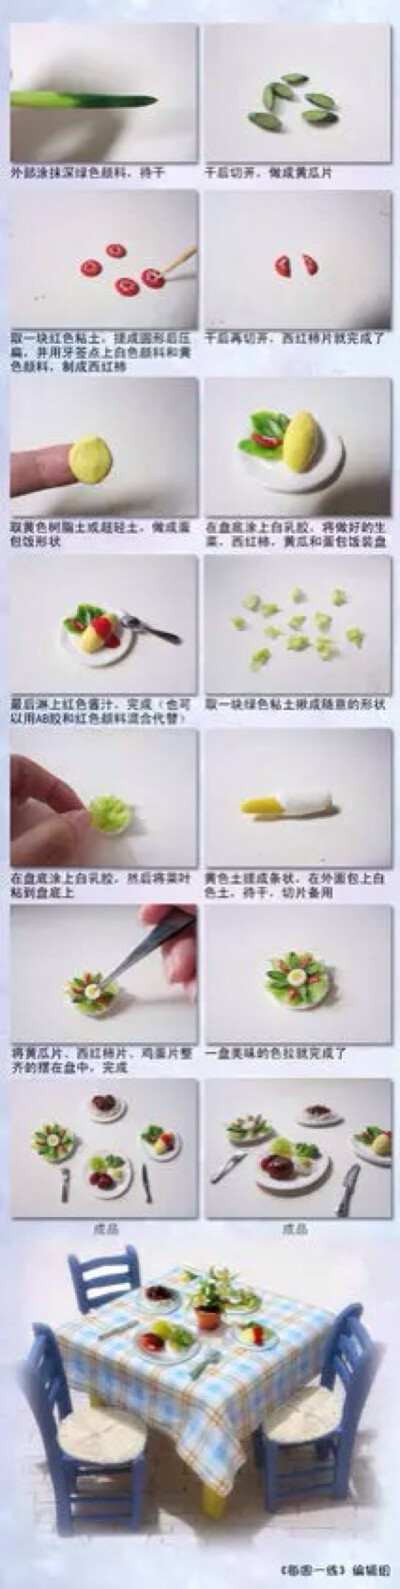 黏土教程 蔬菜拼盘 黏土食玩